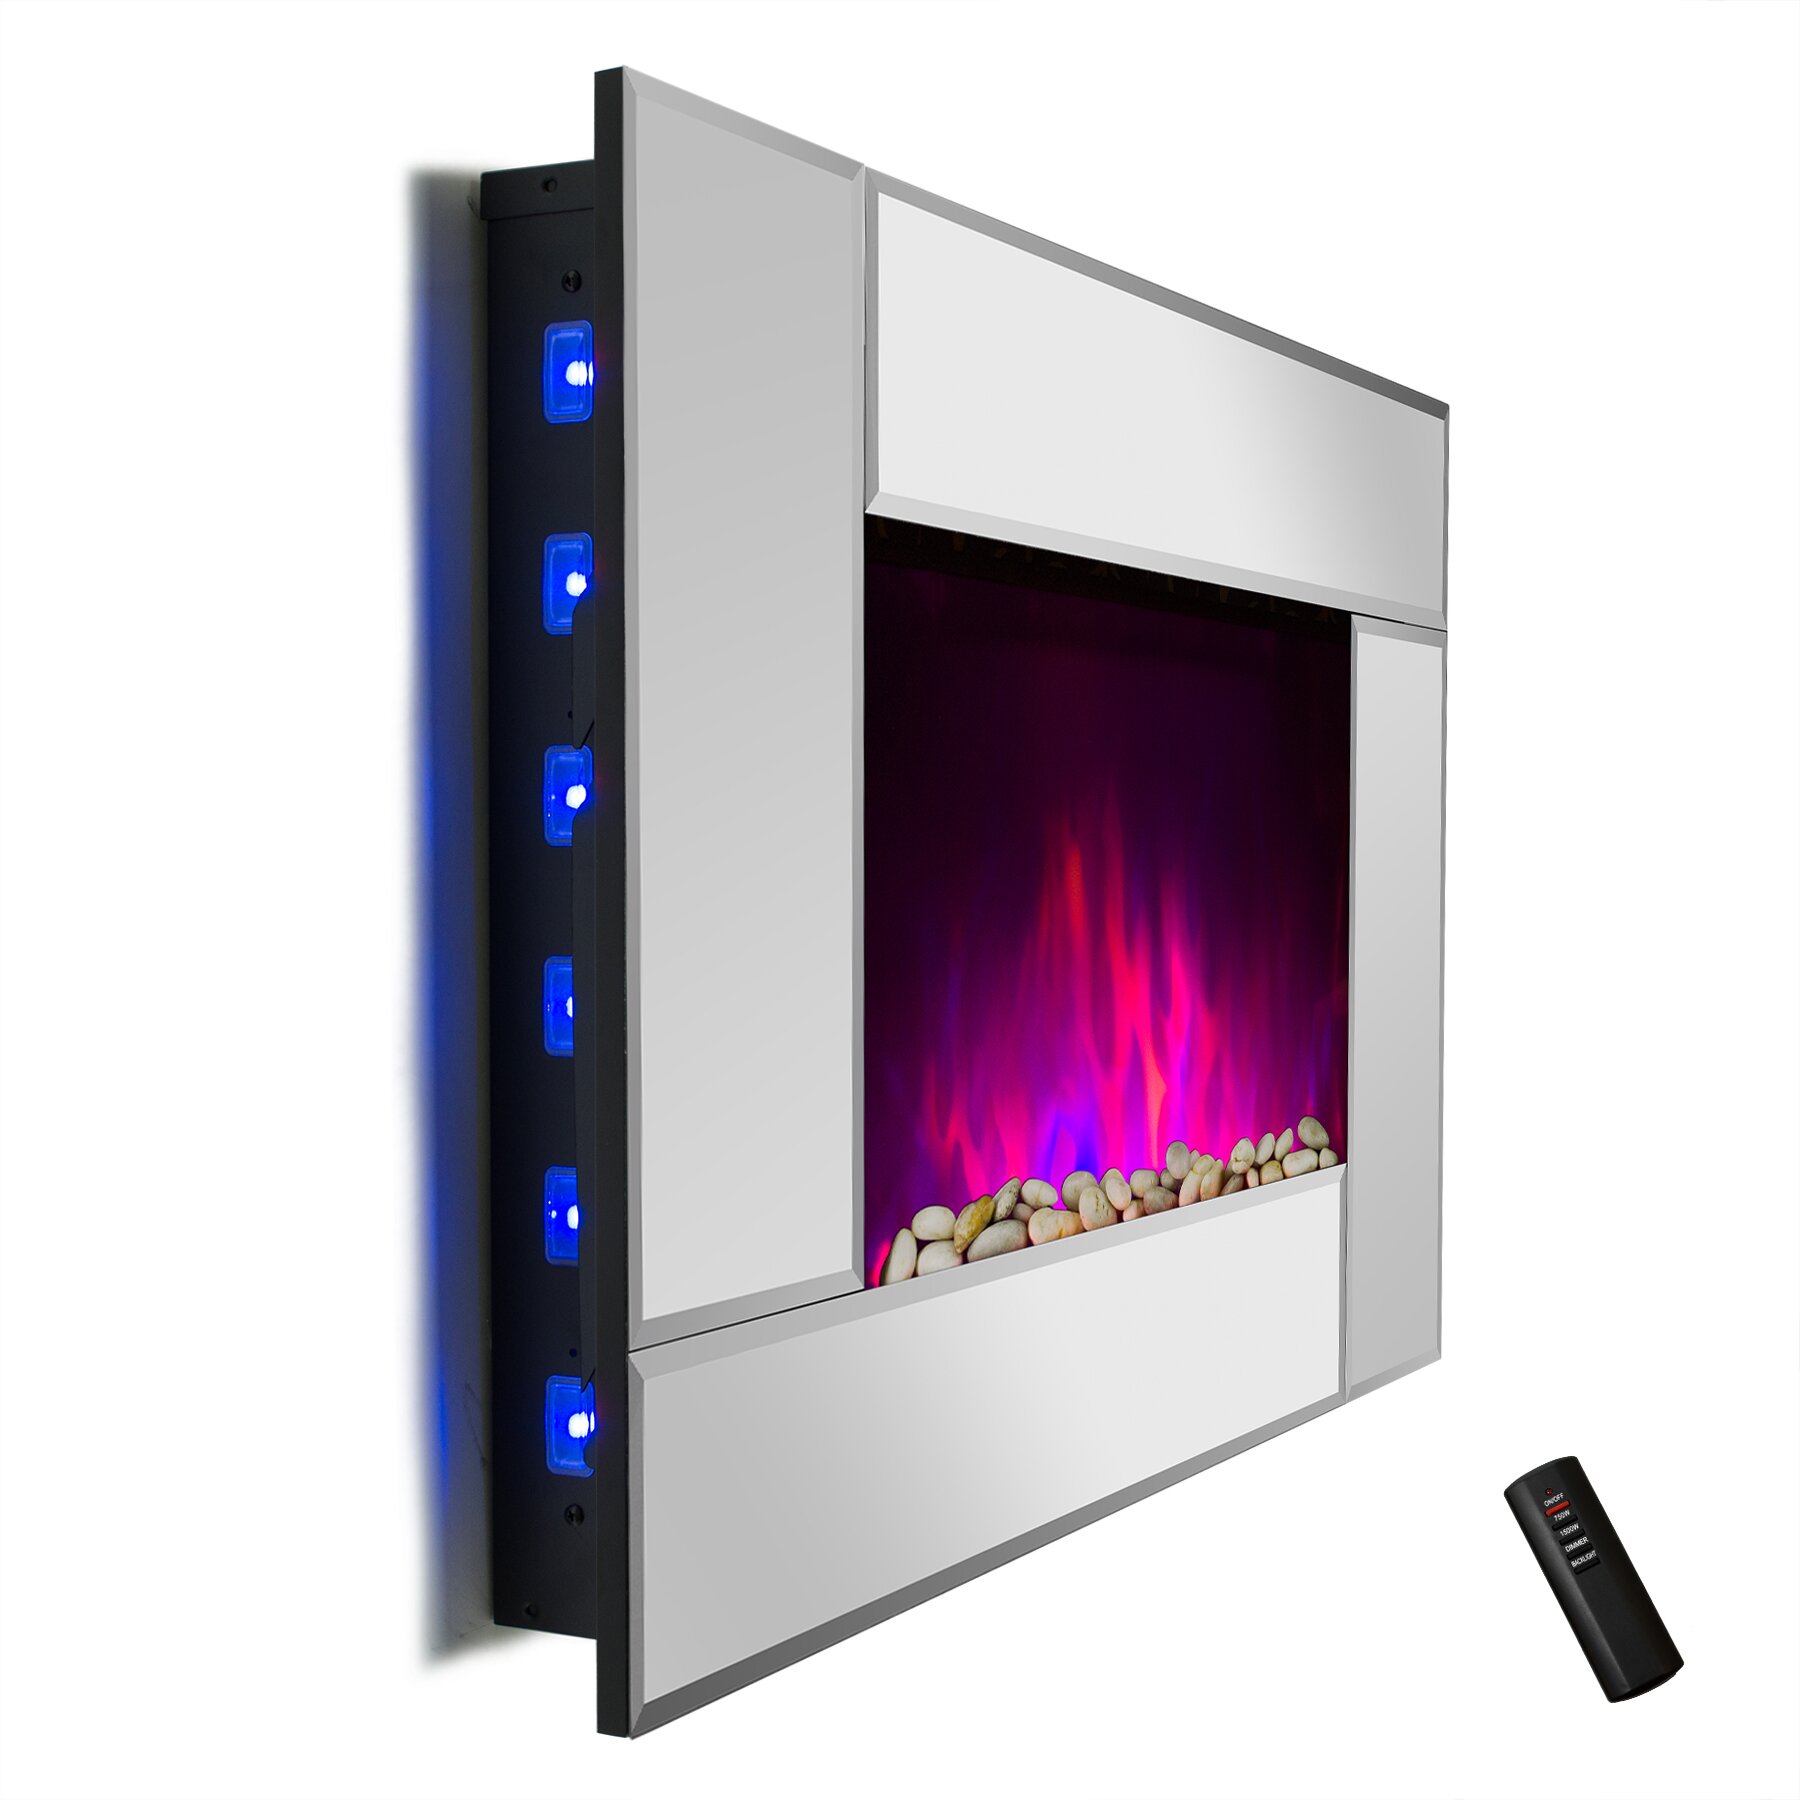 GoldenVantage 5200 BTU Wall Mount Electric Fireplace Heater & Reviews ...